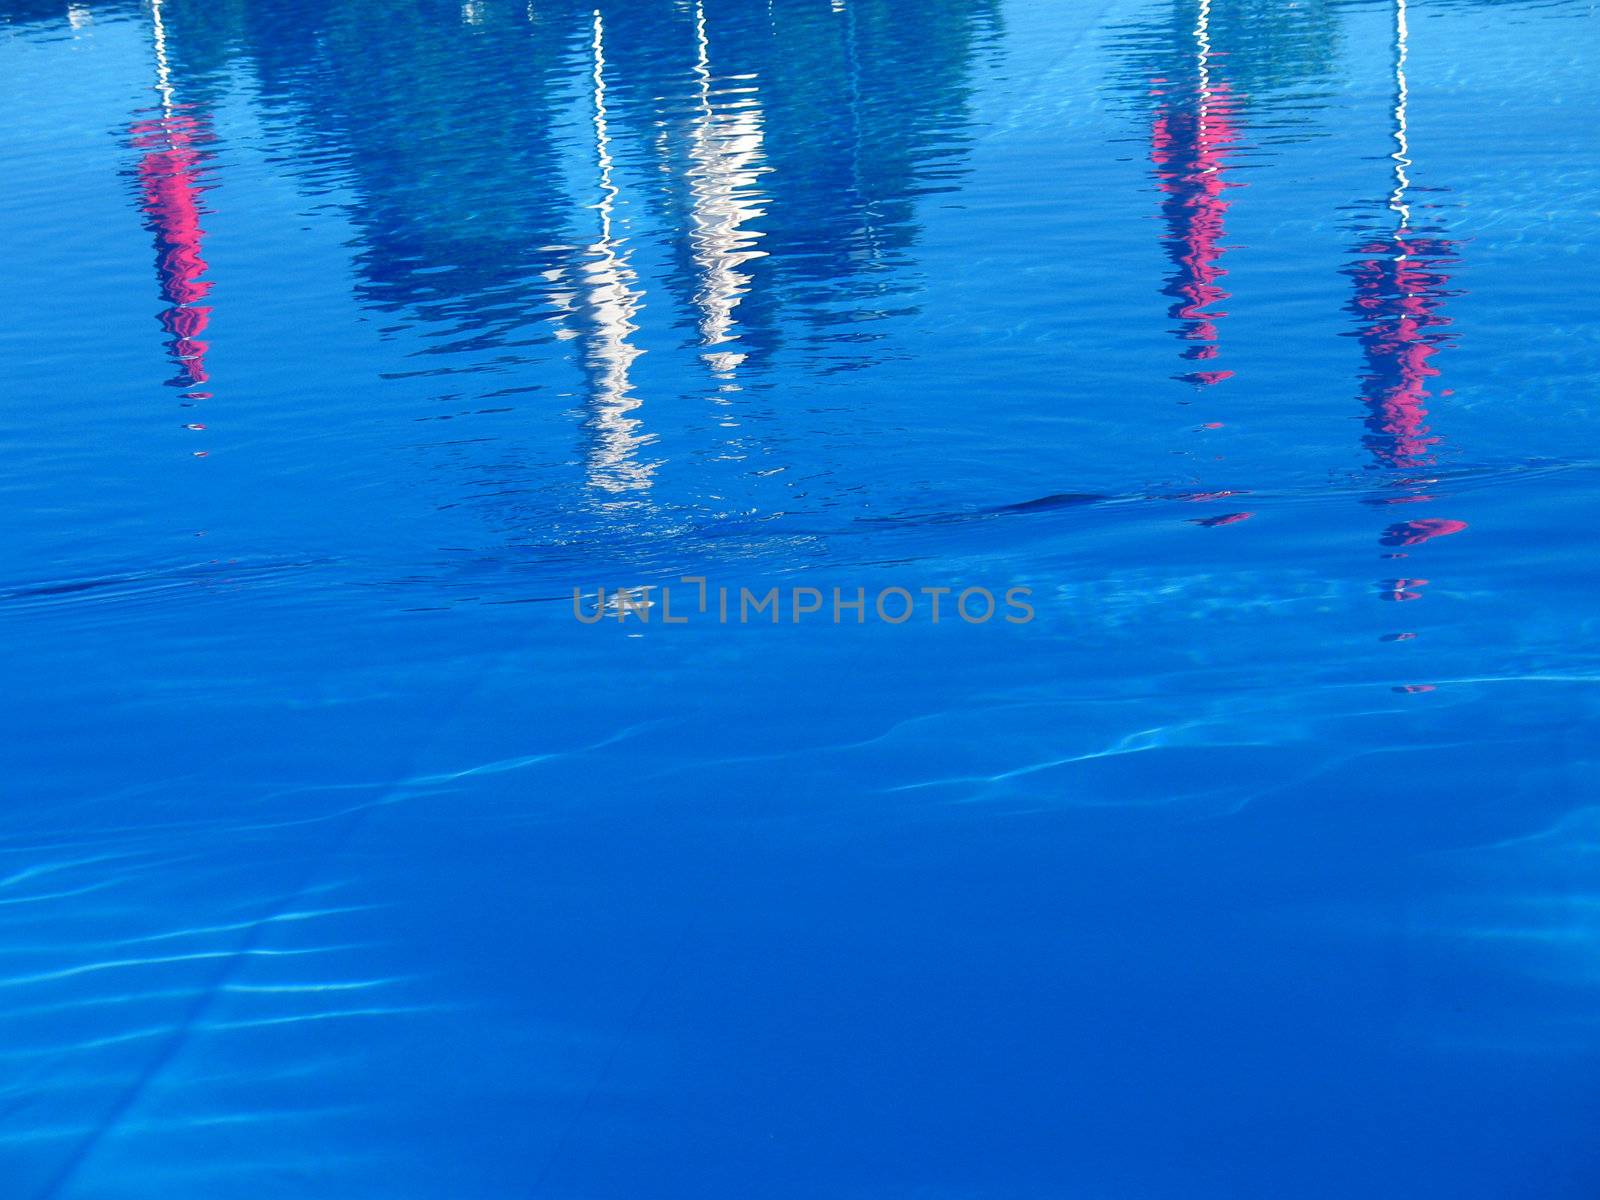 Umbrellas reflected in pool water by keki